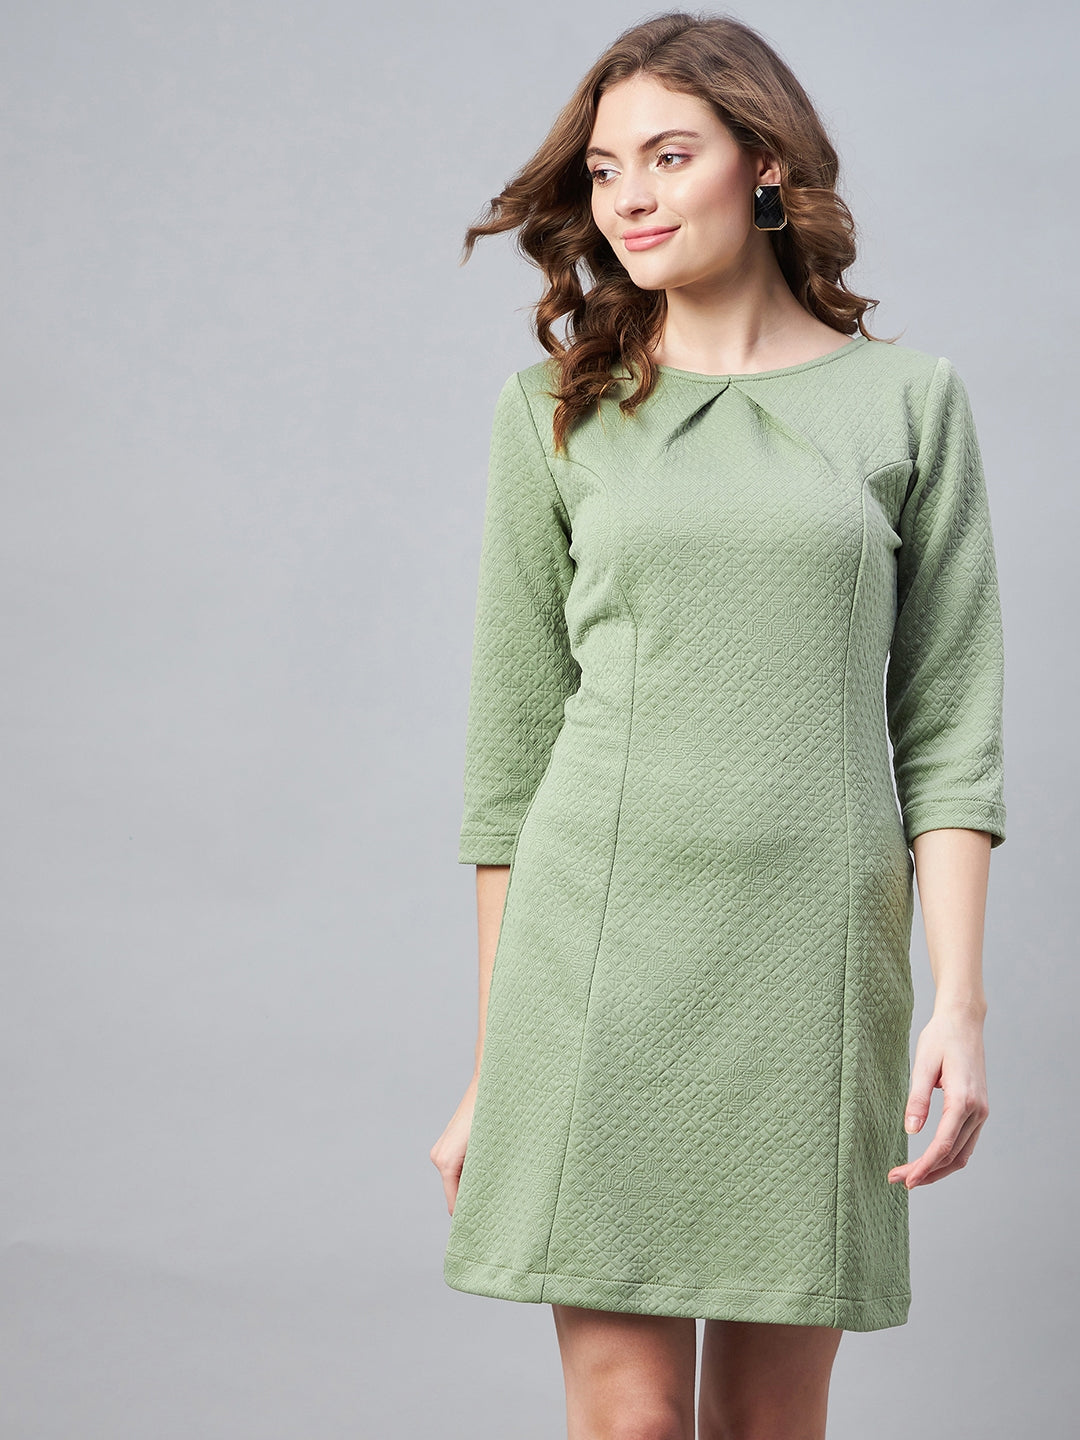 Olive-Polyester-Jacquard-Self-Design-Dress